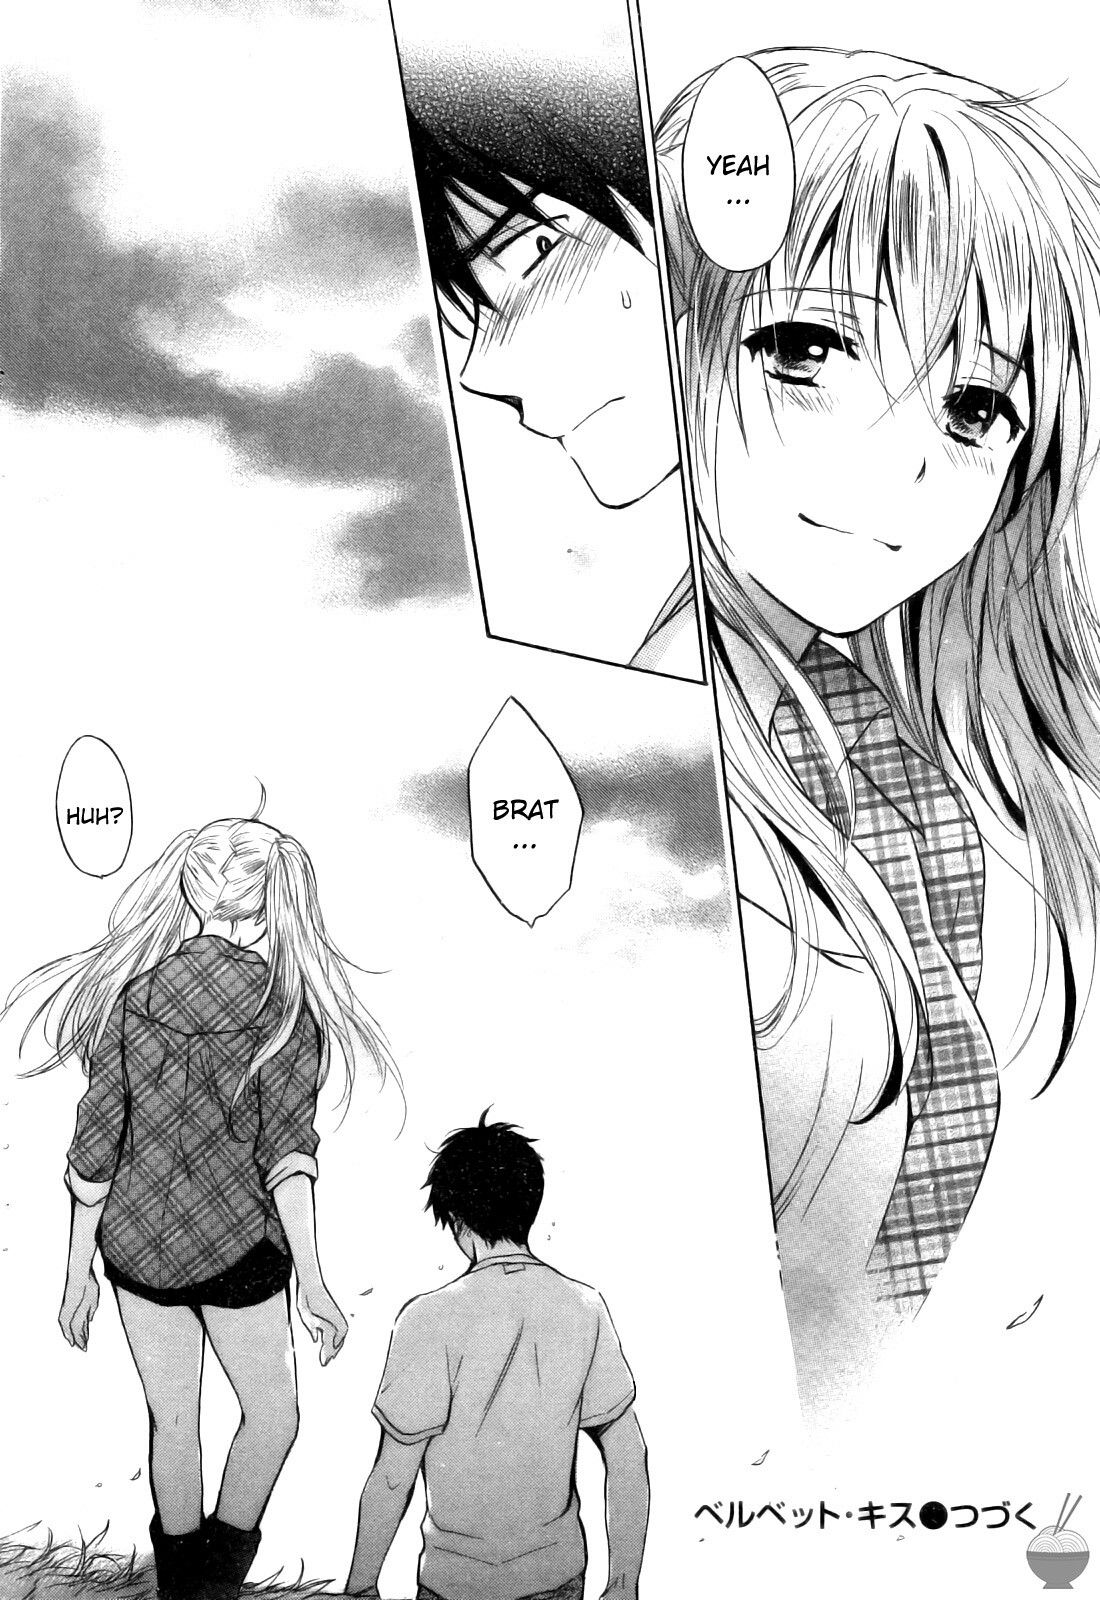 Adult couple manga